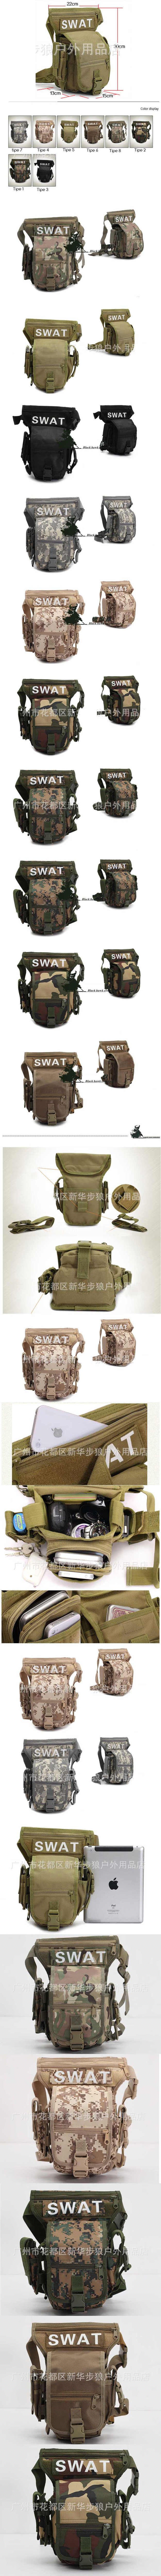 cari tas selempang SWAT ala militer USA ? klik dan pesan online disini , banyak pilihan tas militer dengan kualitas bagus.